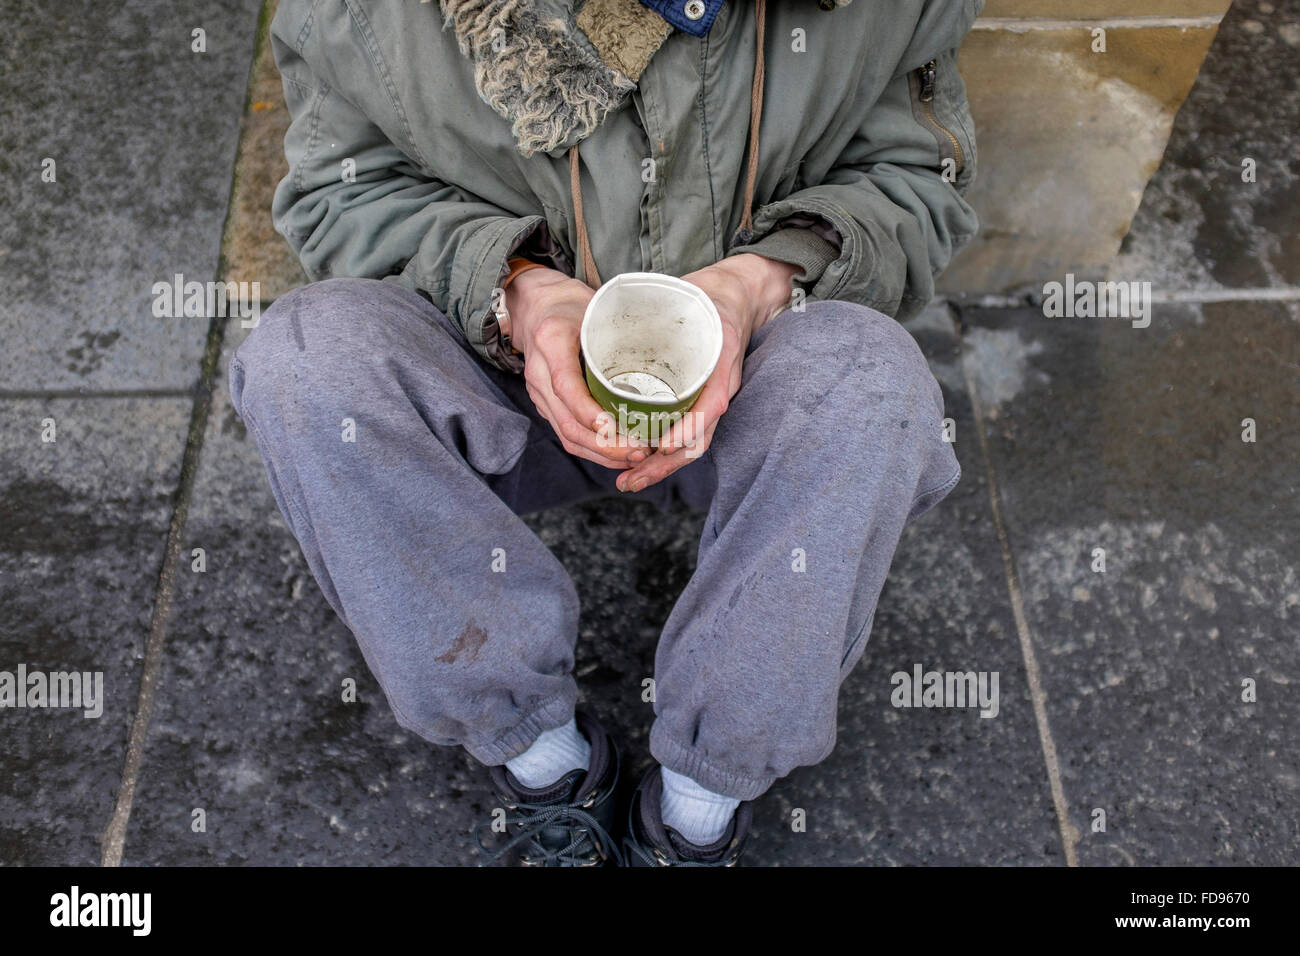 El mendigo de la calle, sentado en una acera con una taza de cartón para reunir dinero y caridad. Foto de stock